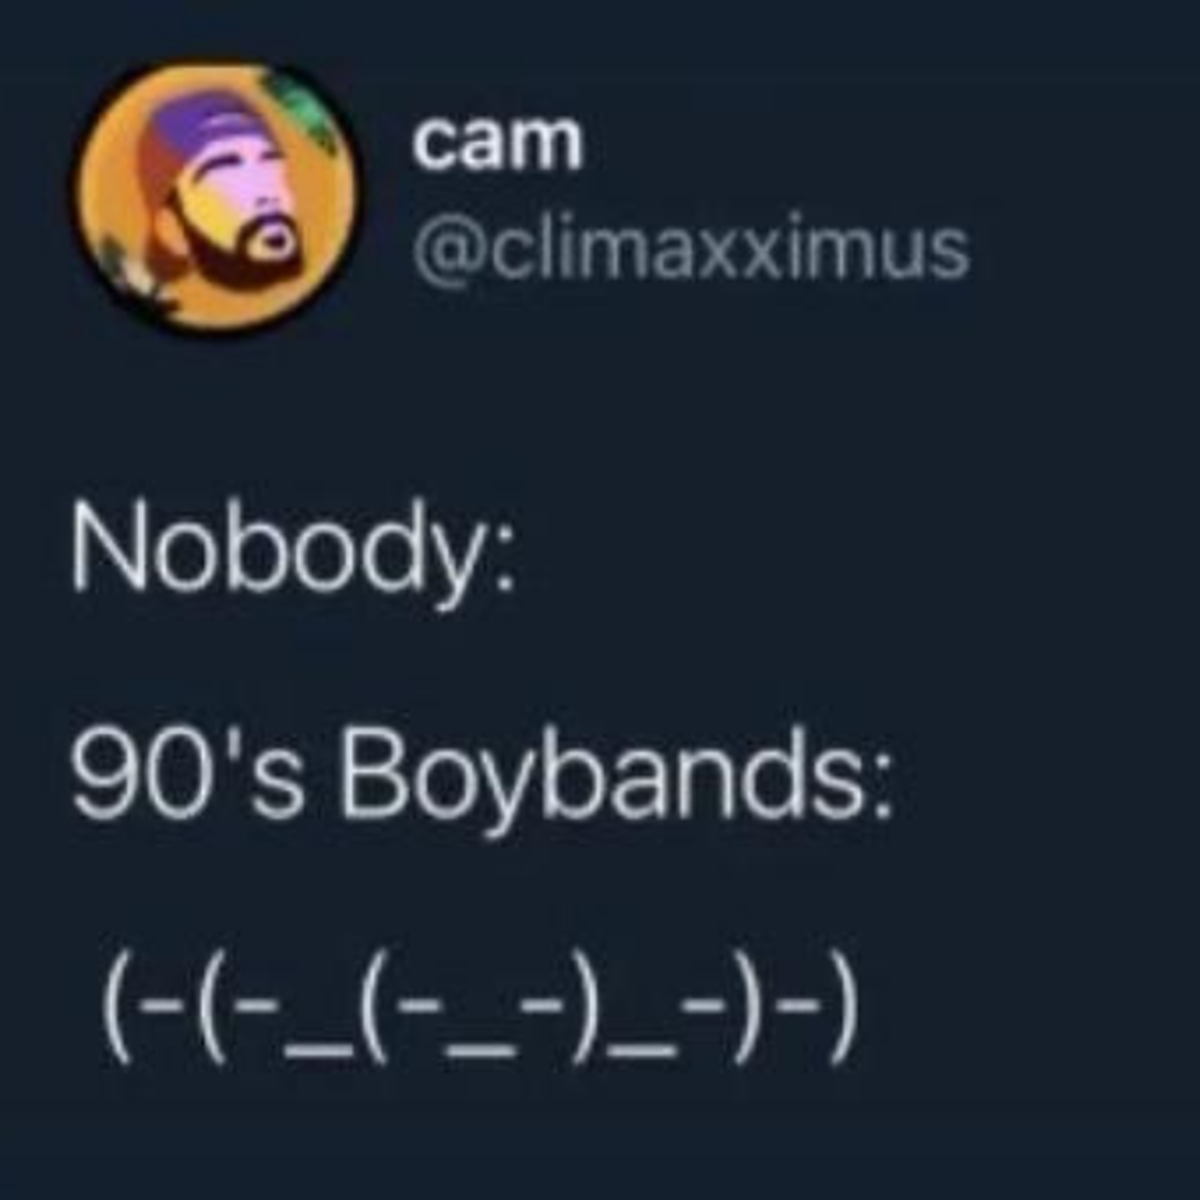 nine-ball - cam Nobody 90's Boybands ___